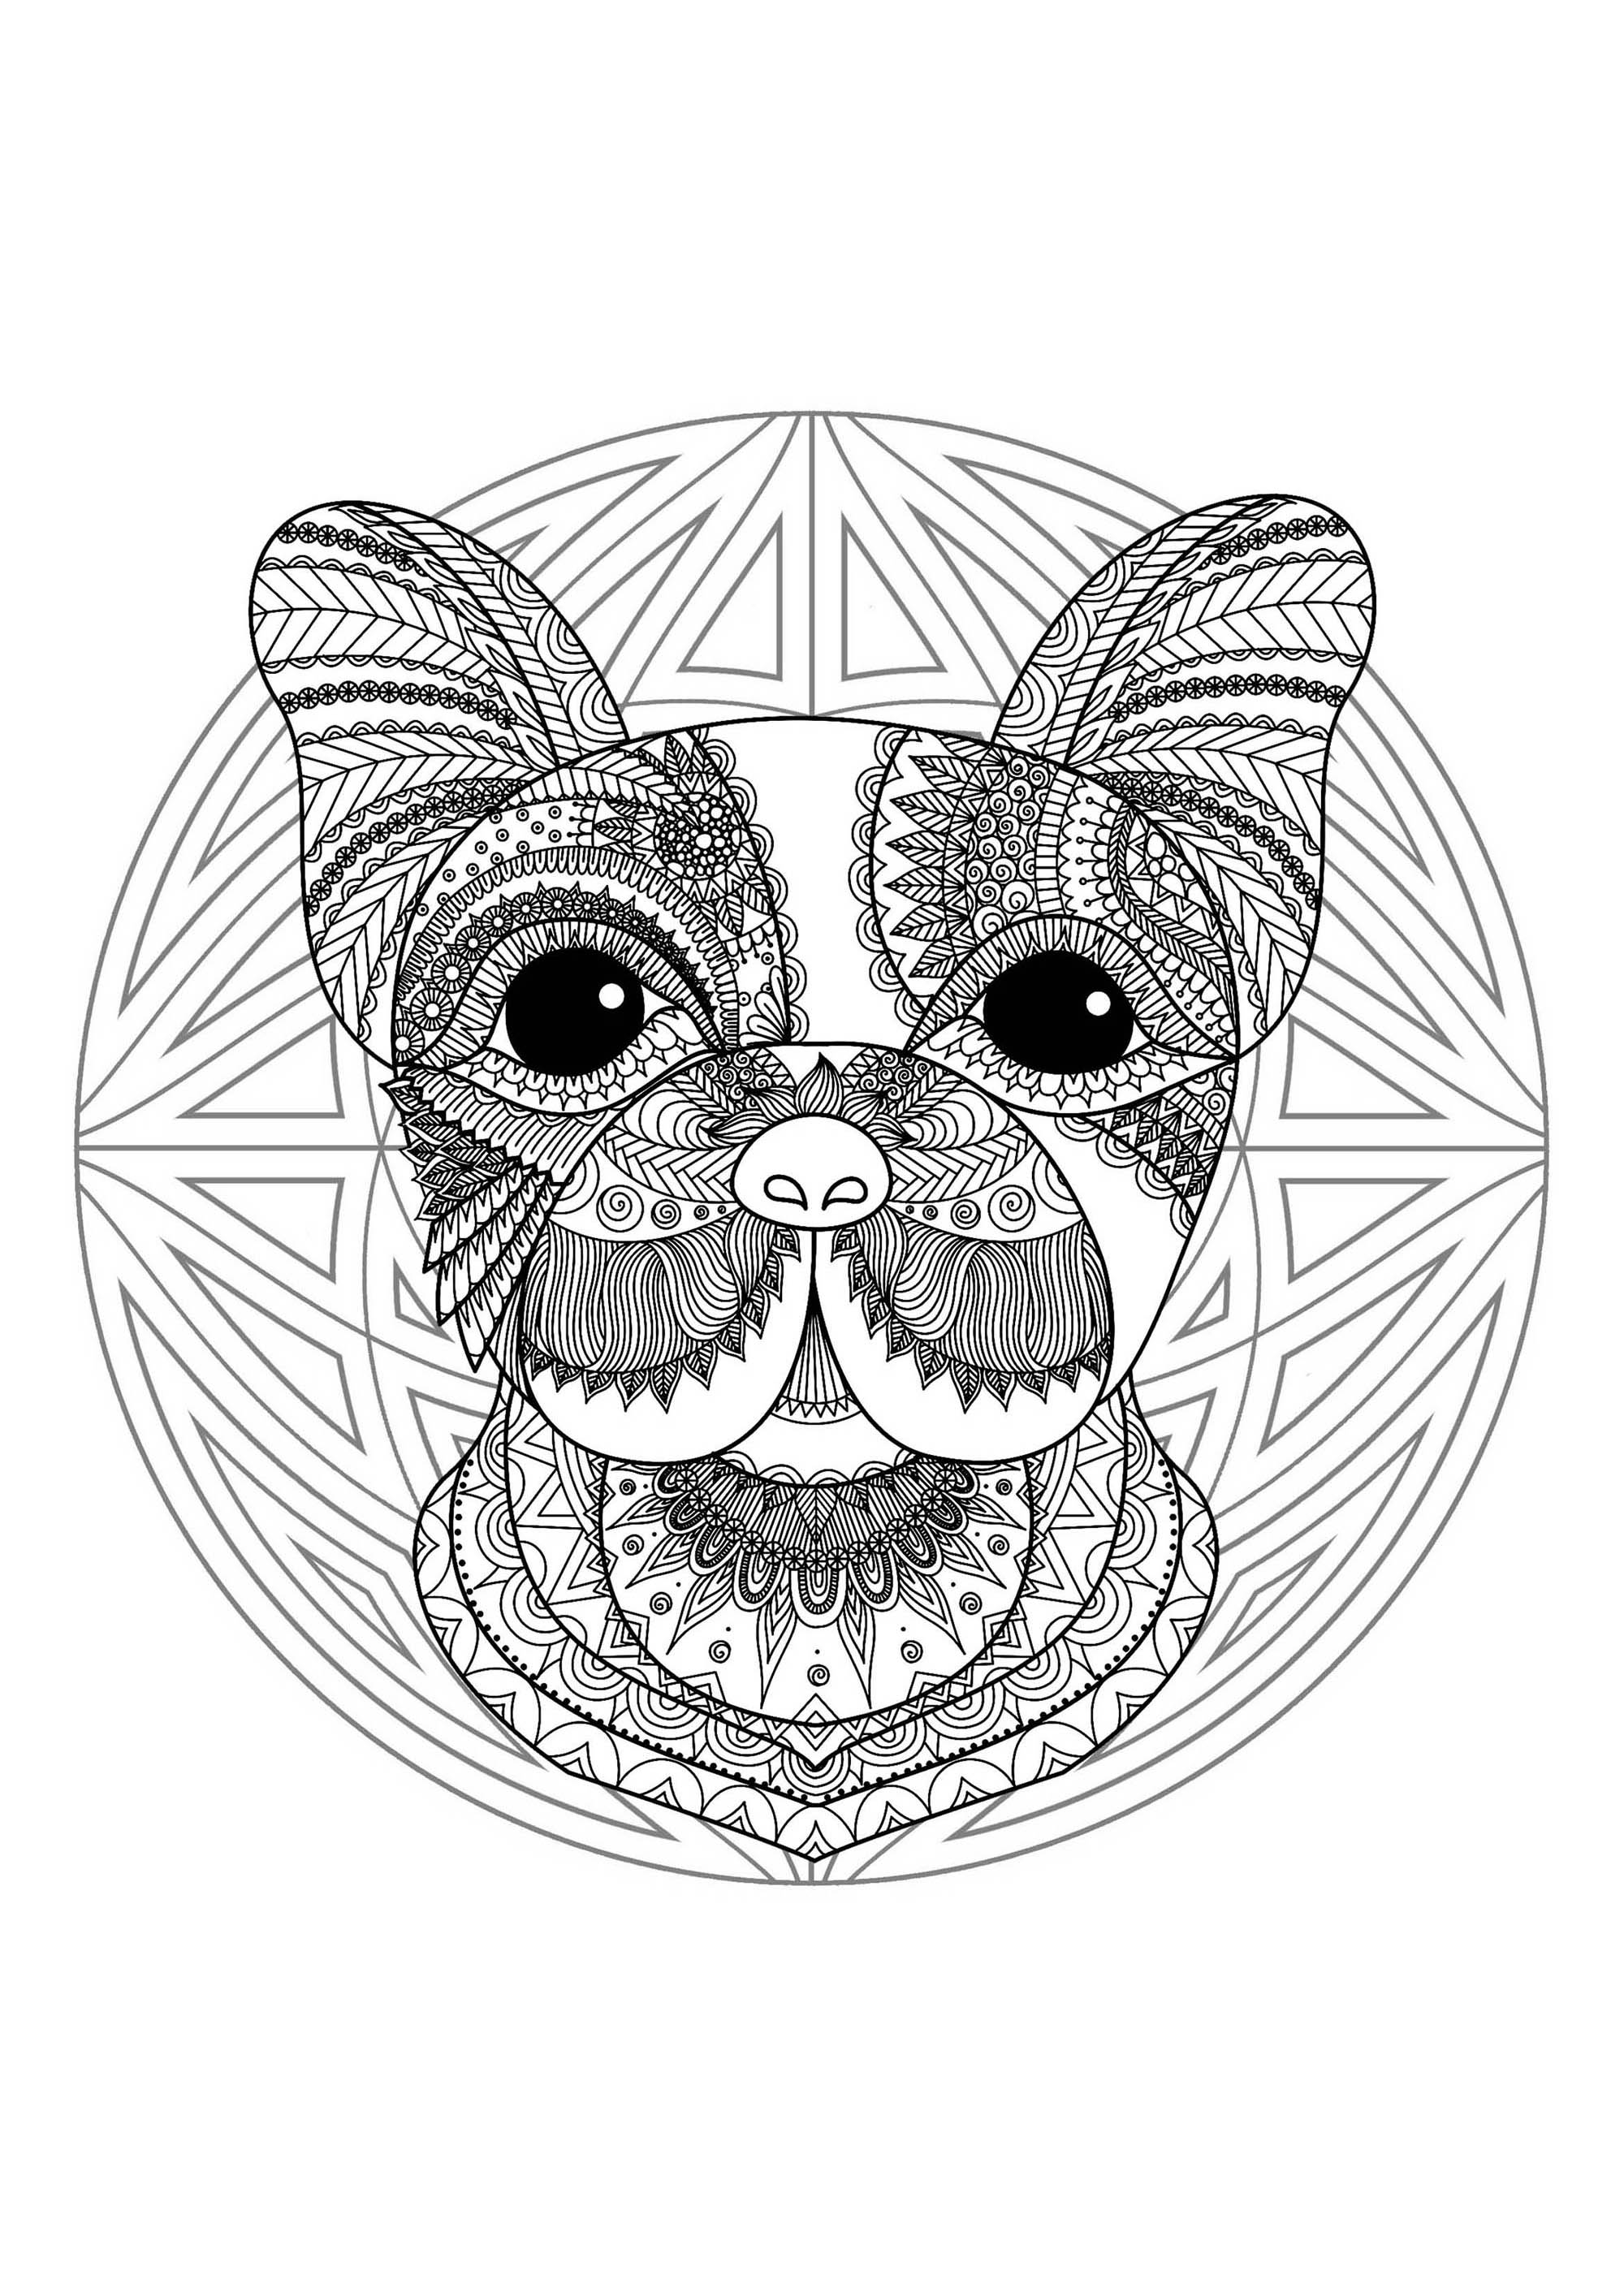 Mandala & tête de chien. Préparez vos feutres et crayons pour réaliser la mise en couleur de ce Mandala plein de petits détails et zones intriquées.